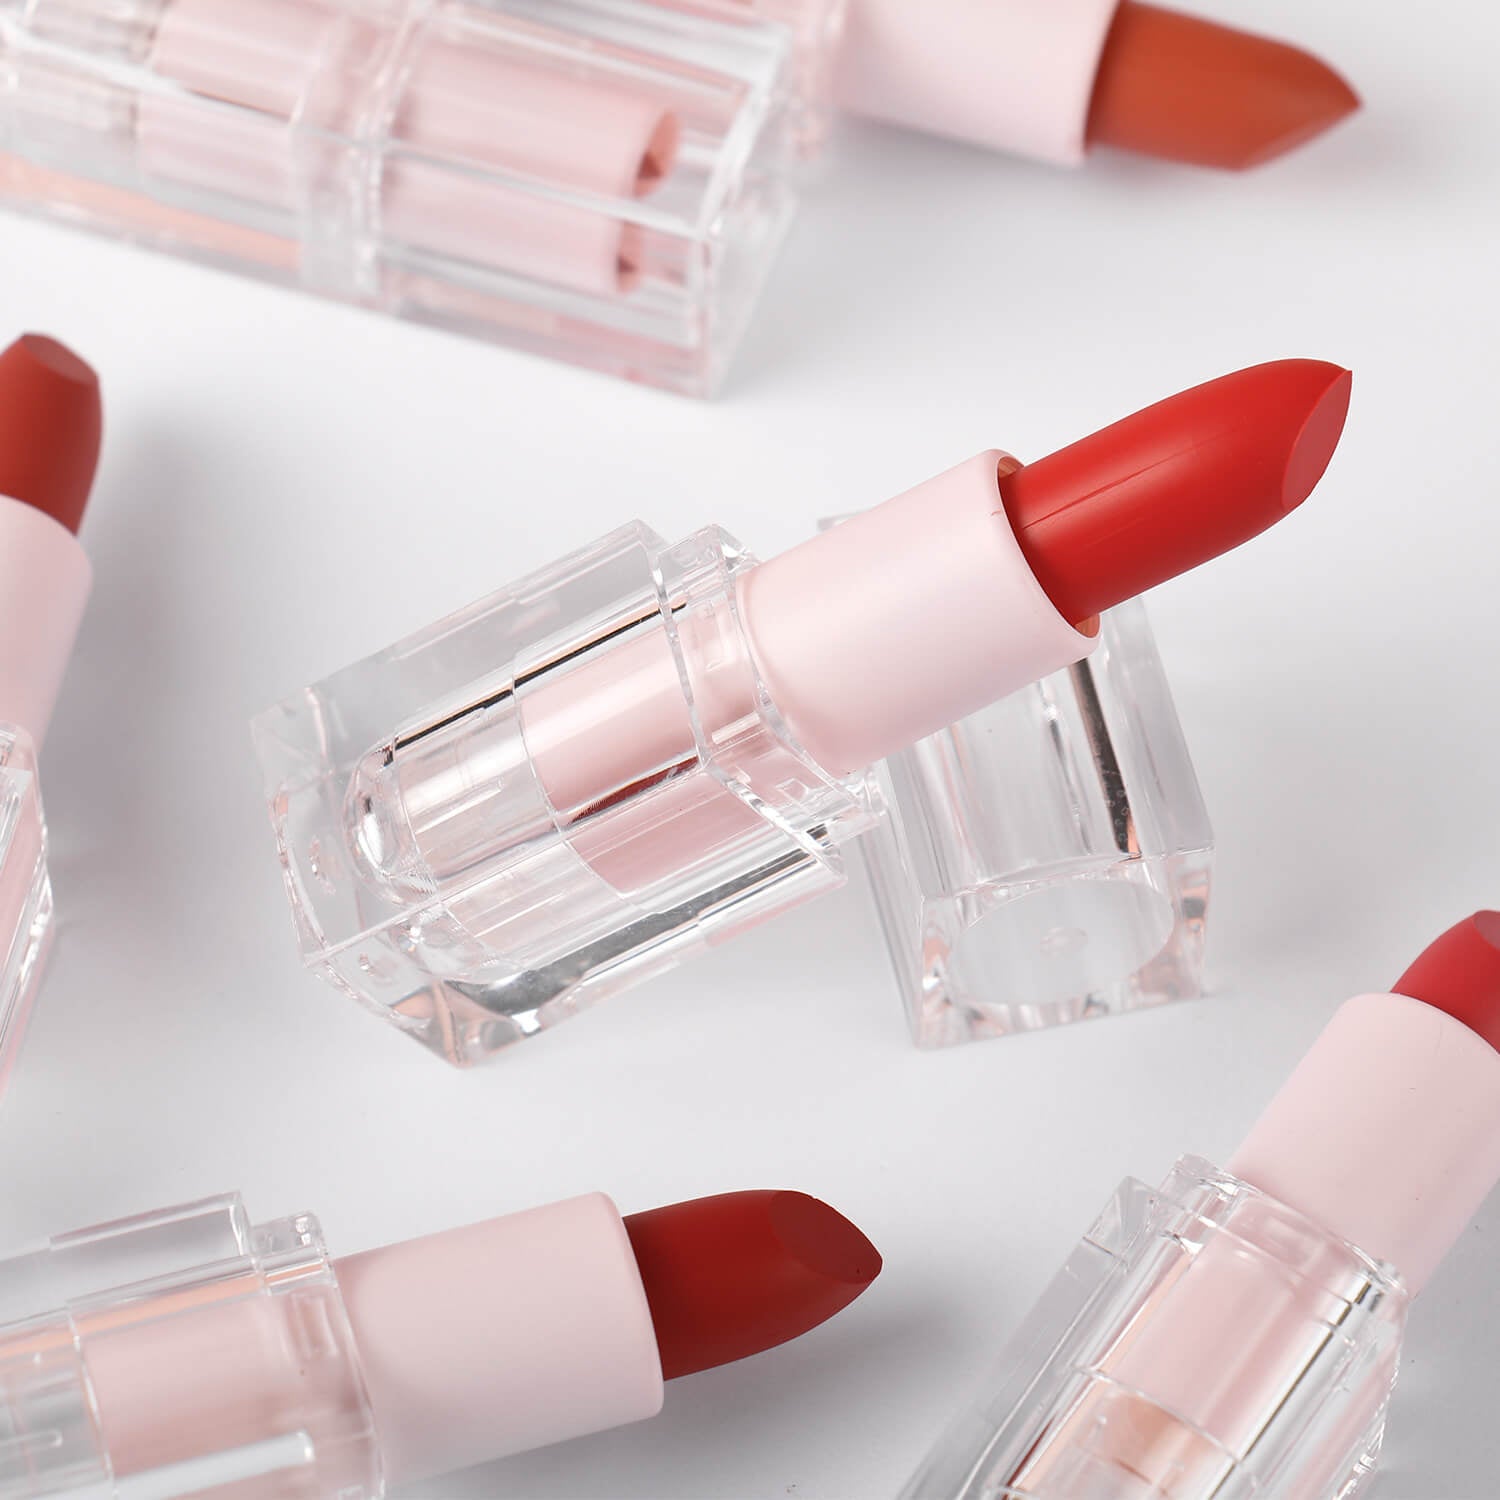 Velvet Matte Moisturizing Lipstick Sampler Kit-14 shades